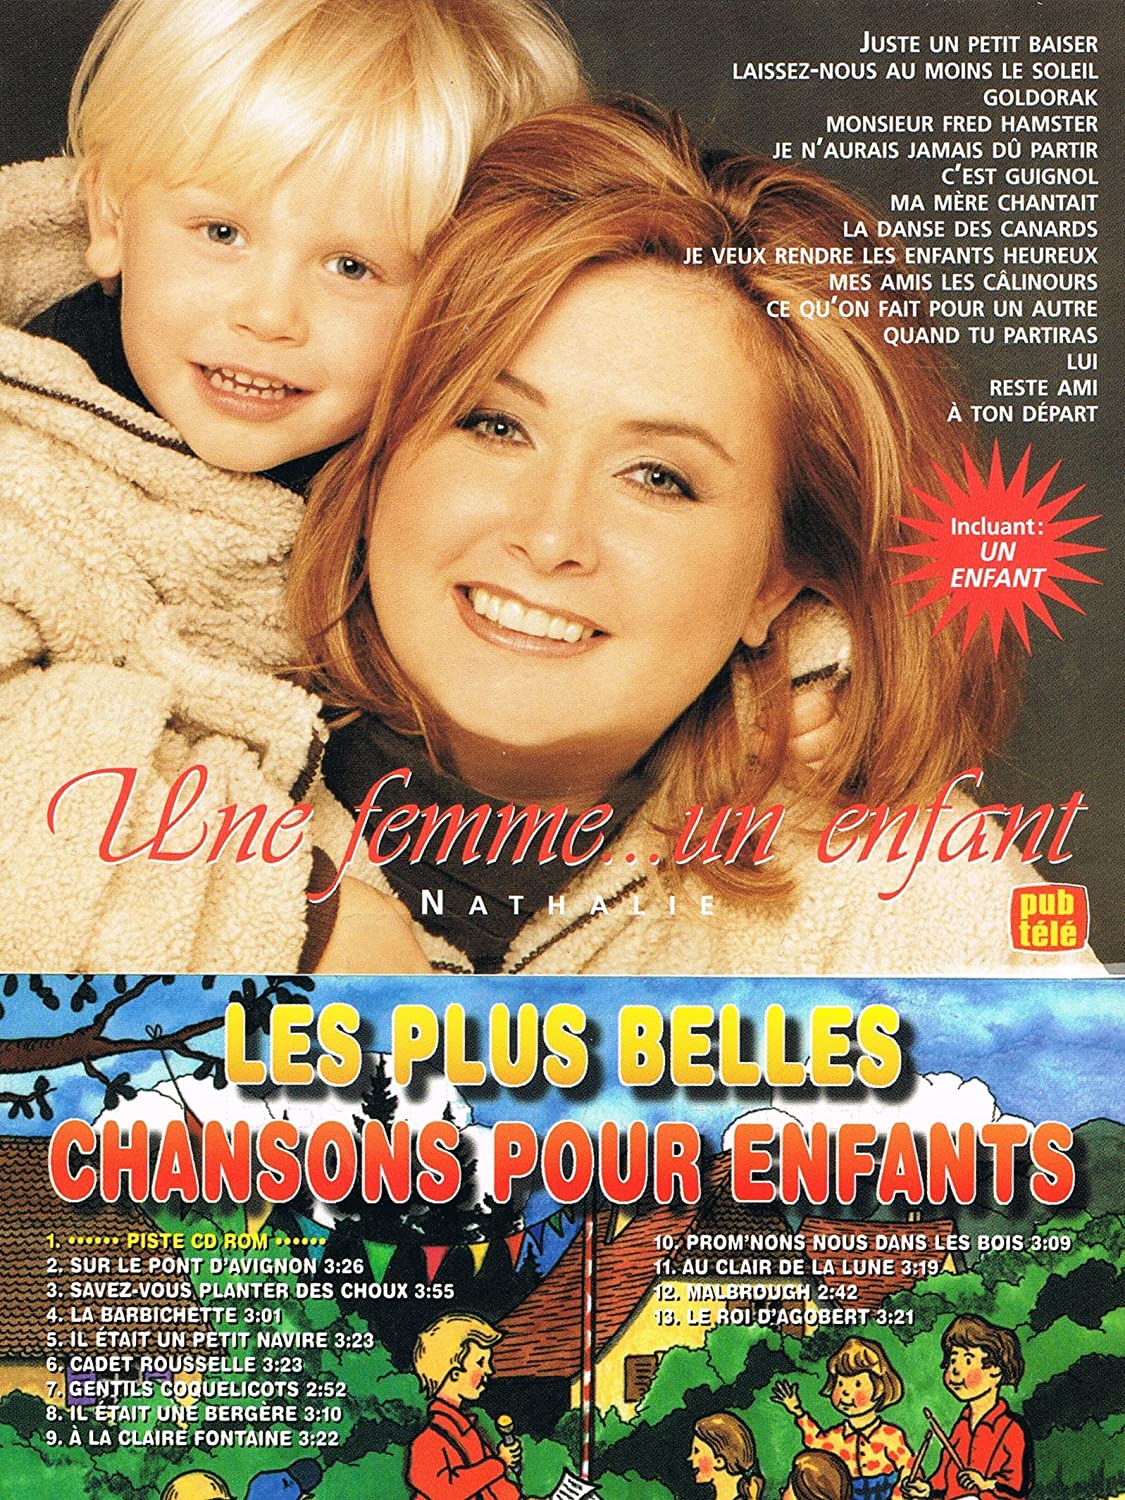 Une Femme... Un Enfant: Les Plus Belles Chansons Pour Enfants [Audio CD] Simard/ N/Cindy Et Valentin Ran and Nathalie Simard